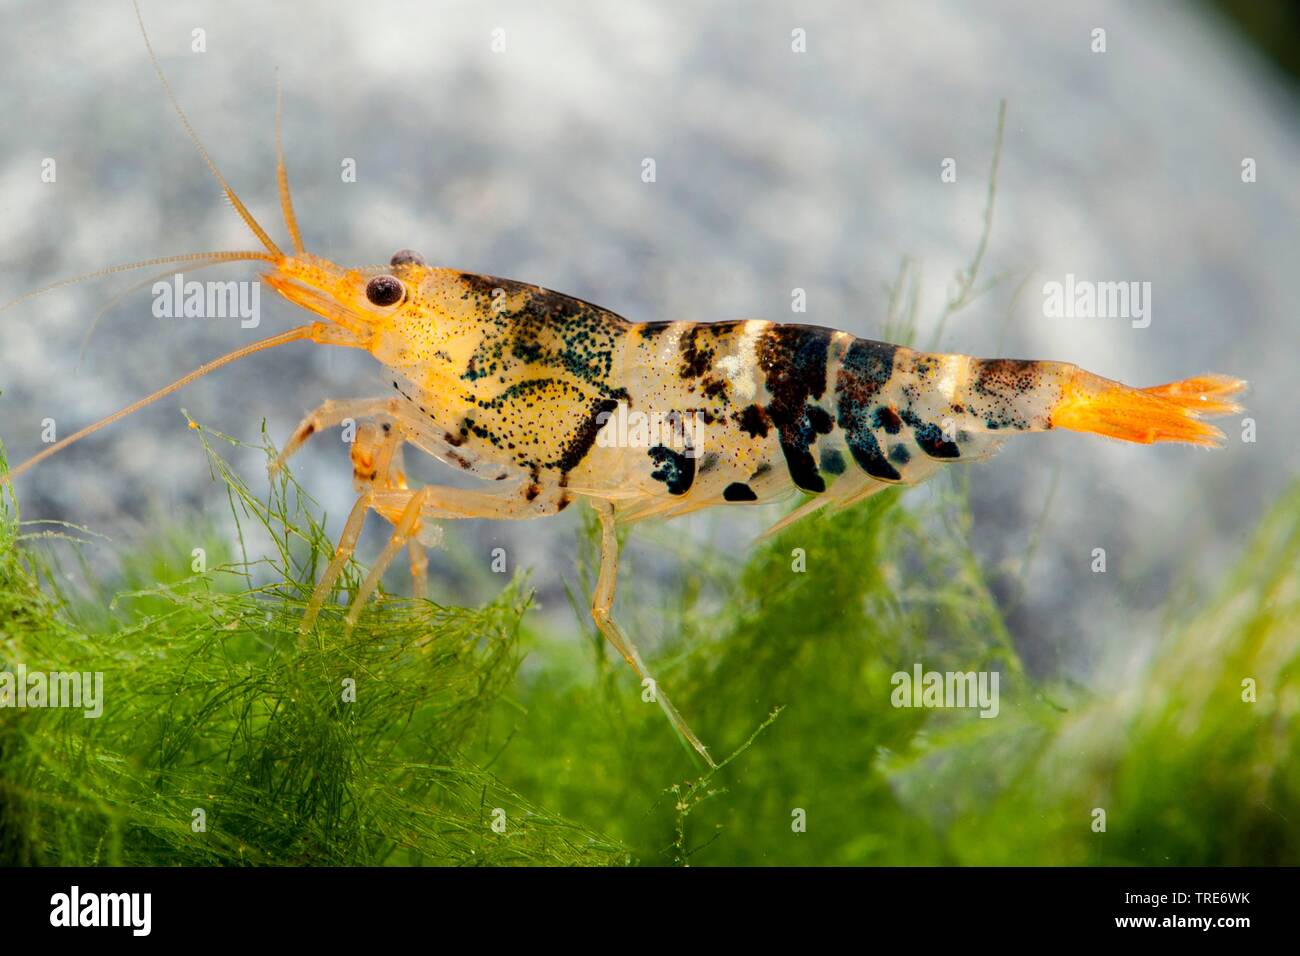 Tiger Dwarf Shrimp (Caridina mariae), side view Stock Photo